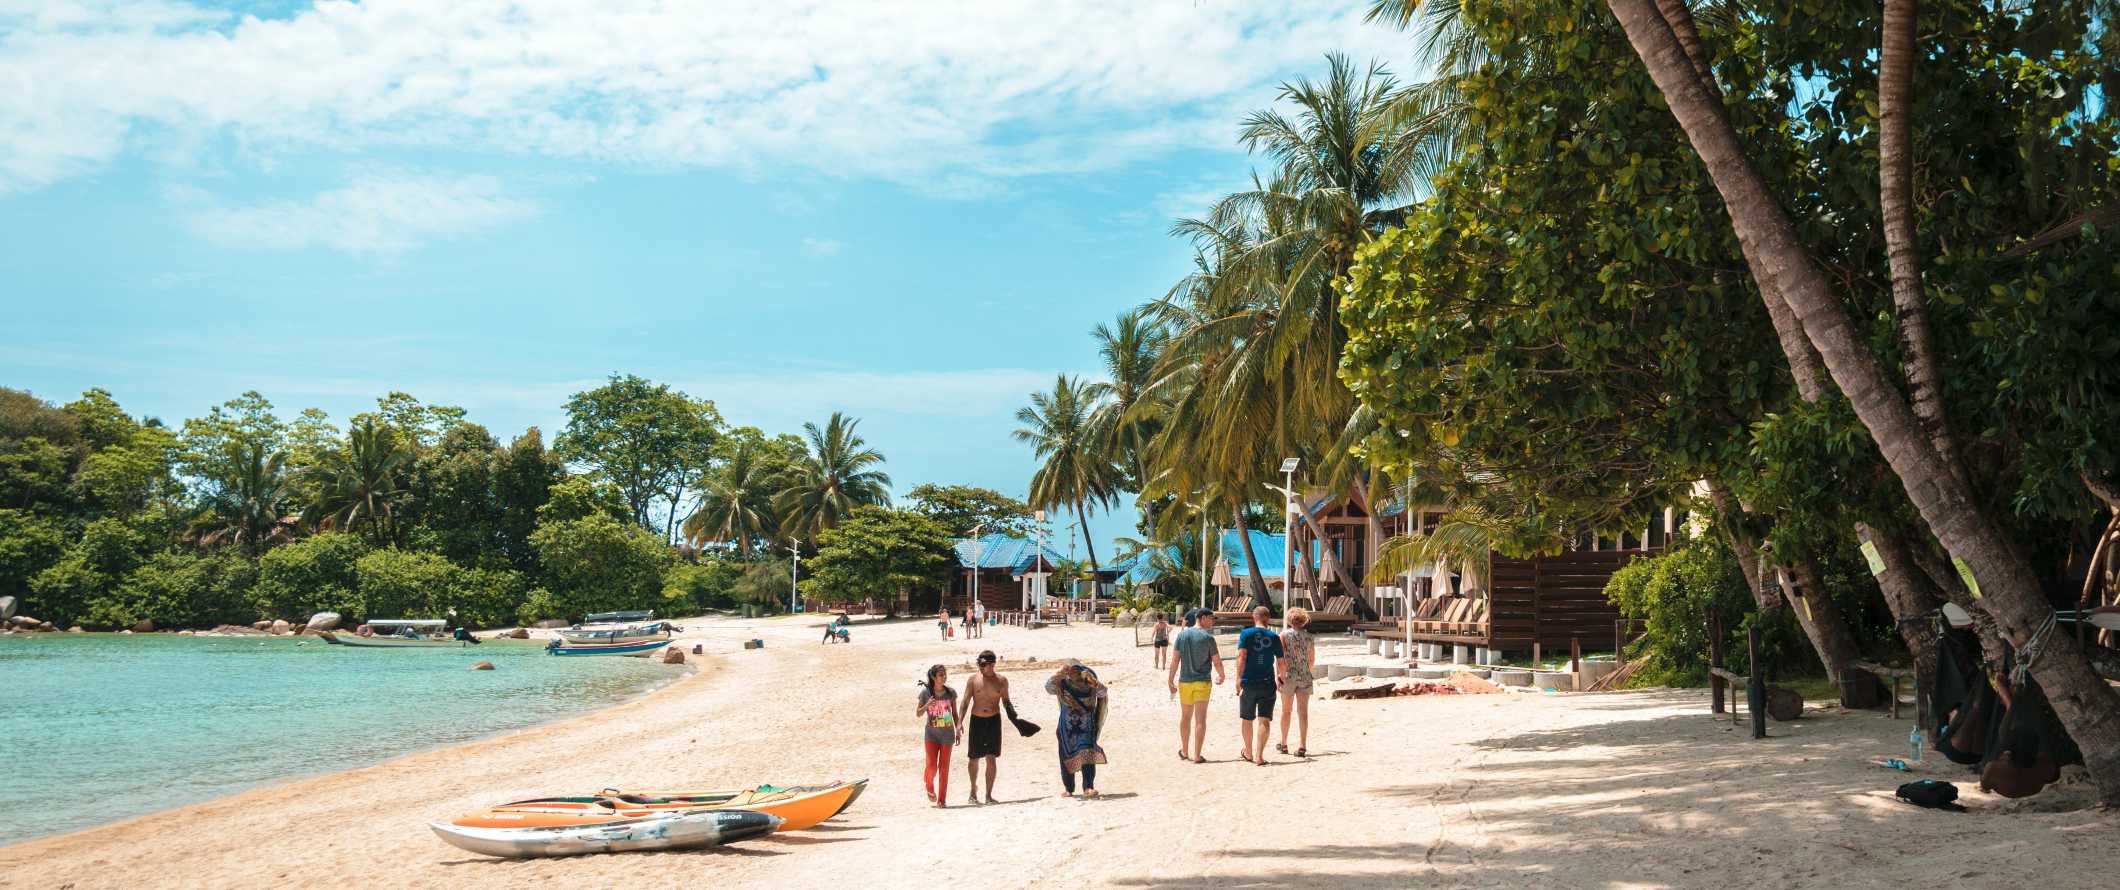 Pessoas caminham ao longo de uma praia com águas claras e palmeiras exuberantes nas Ilhas Perhentian, Malásia